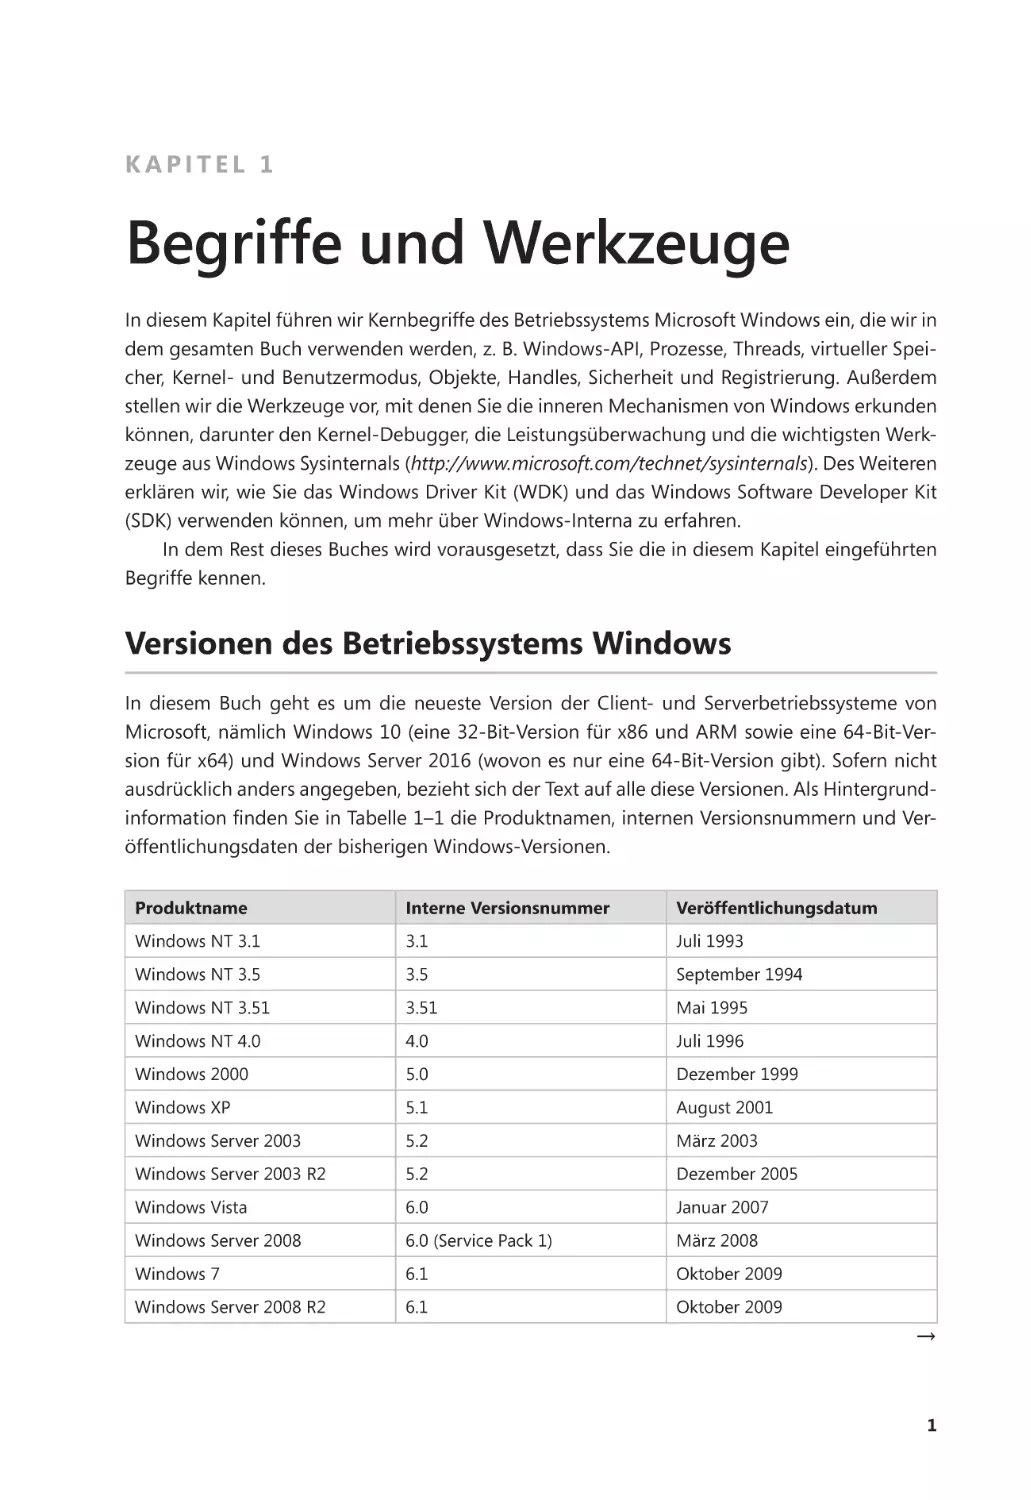 Kapitel 1
Versionen des Betriebssystems Windows